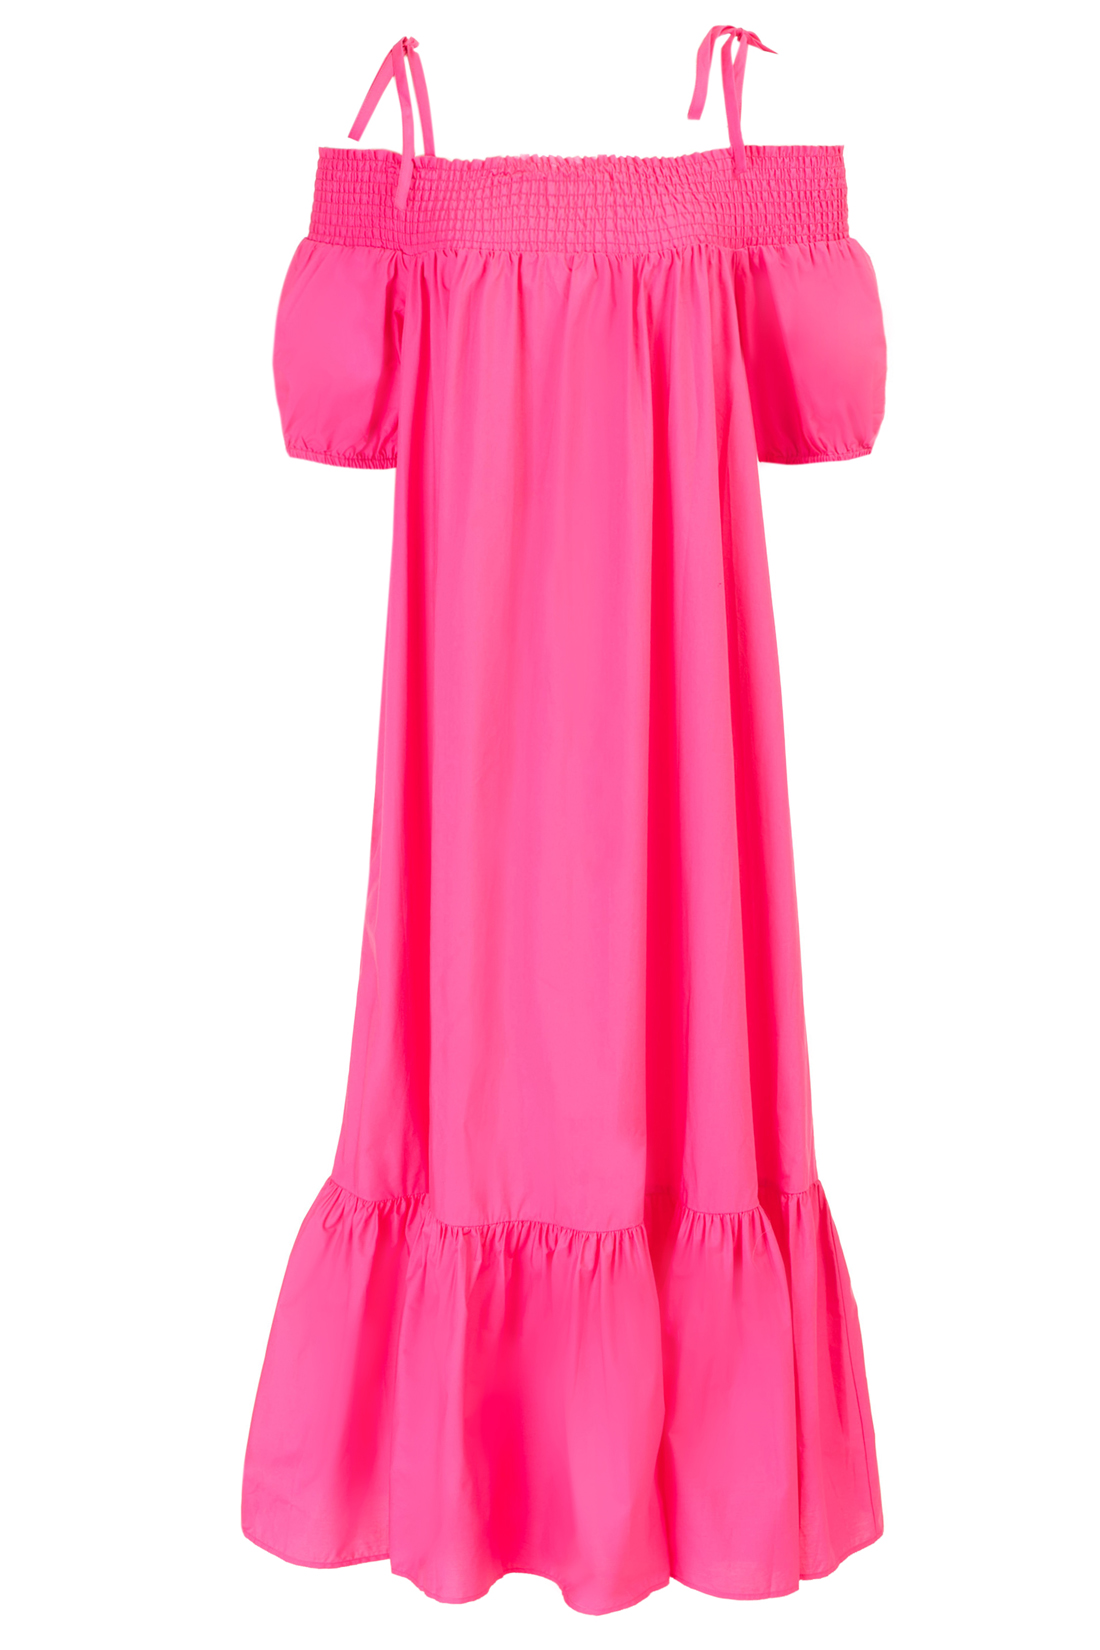 Широкое платье с открытыми плечами (арт. baon B457058), размер S, цвет белый Широкое платье с открытыми плечами (арт. baon B457058) - фото 4